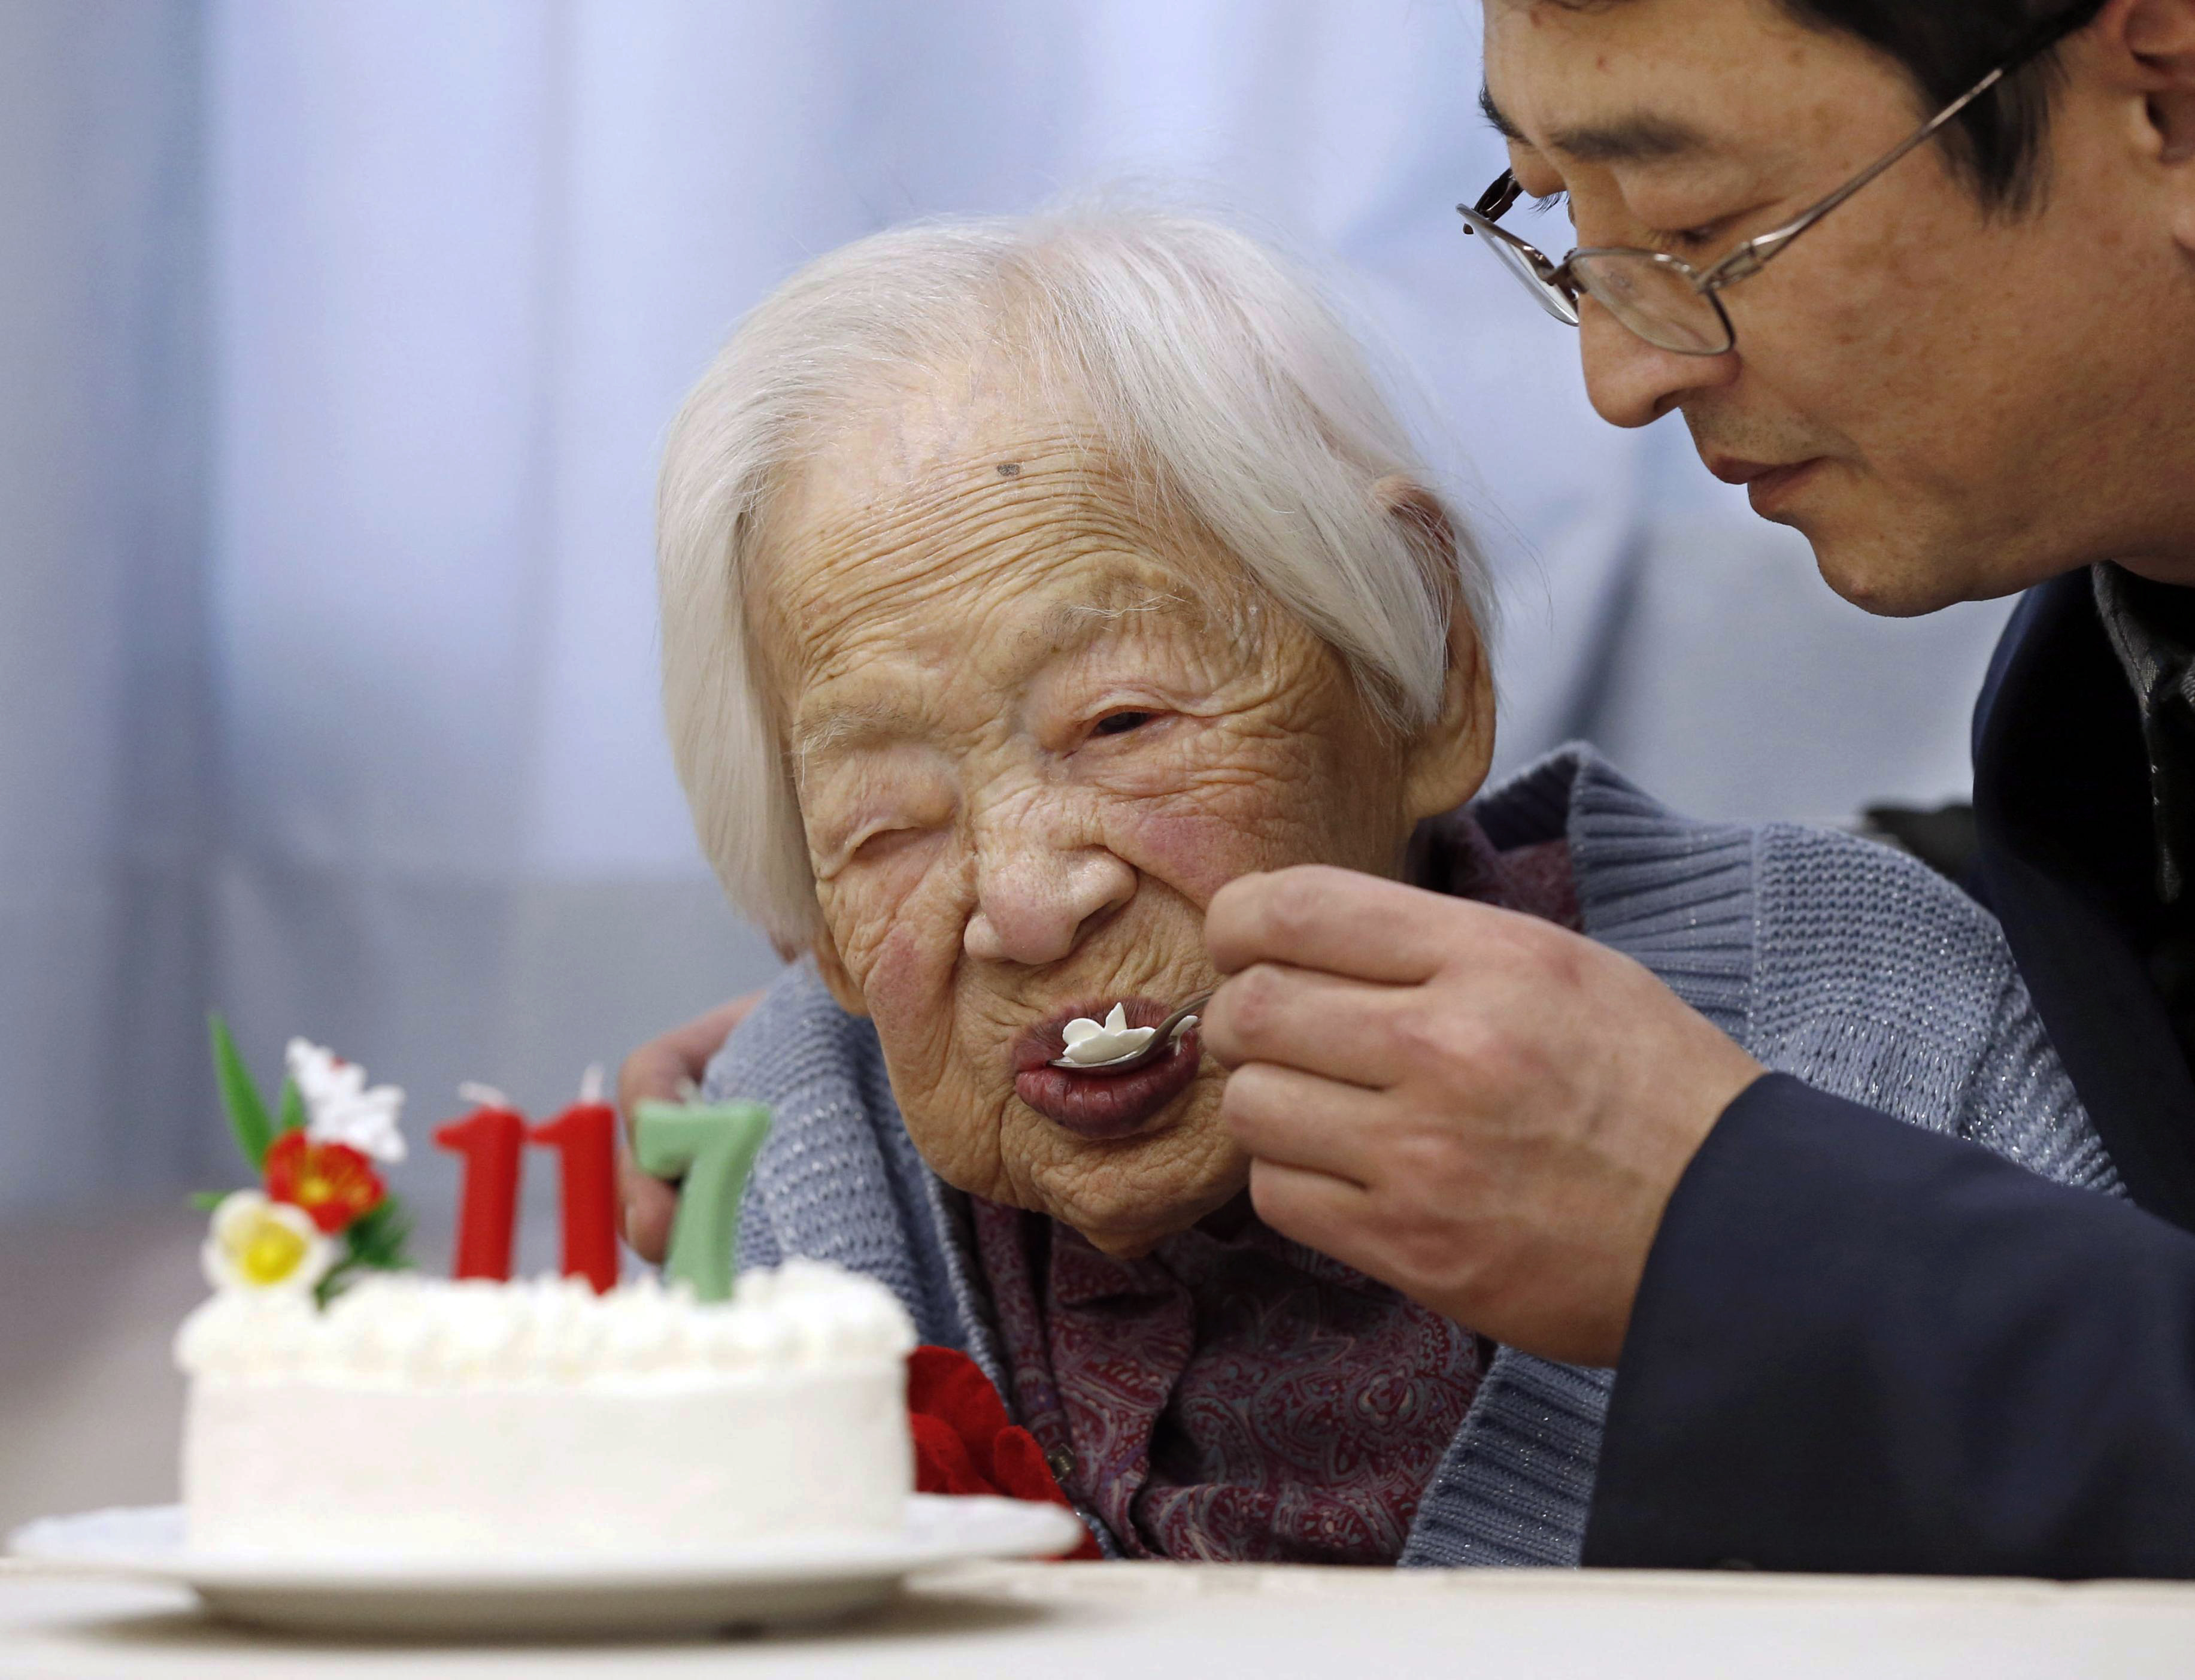 Πέθανε σε ηλικία 117 ετών ο γηραιότερος άνθρωπος στον κόσμο